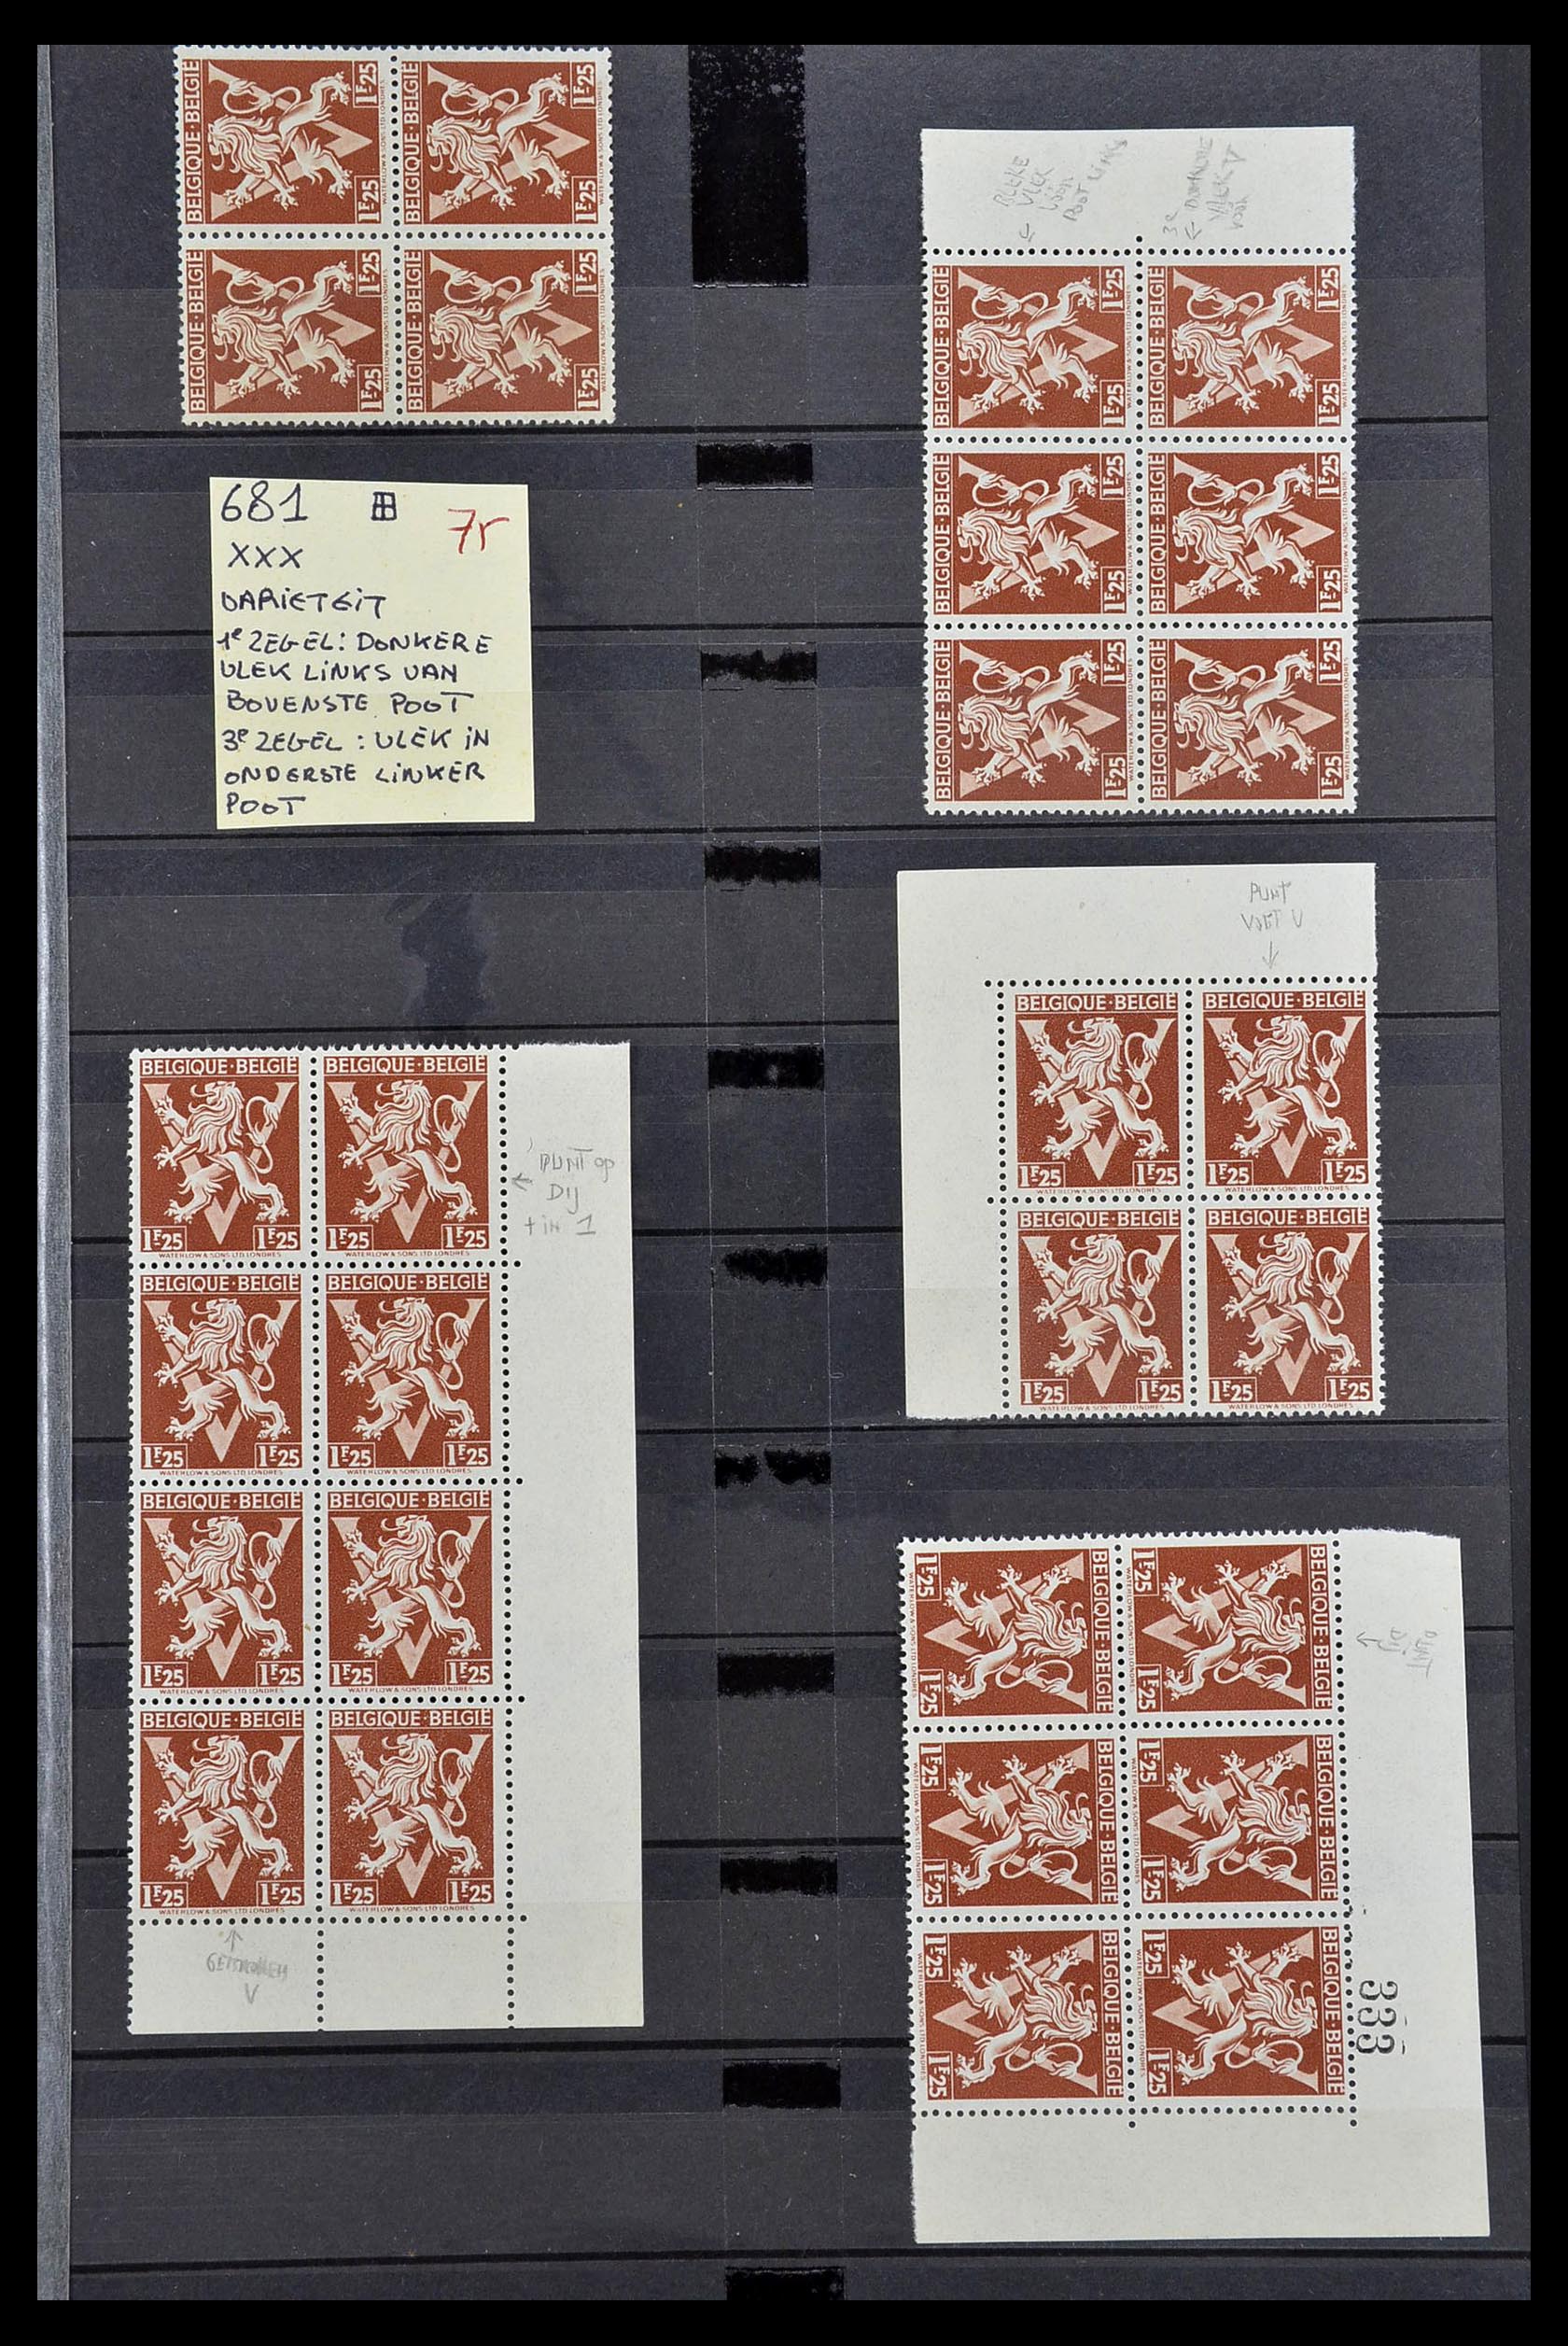 34649 005 - Stamp Collection 34649 Belgium varieties 1940-1971.